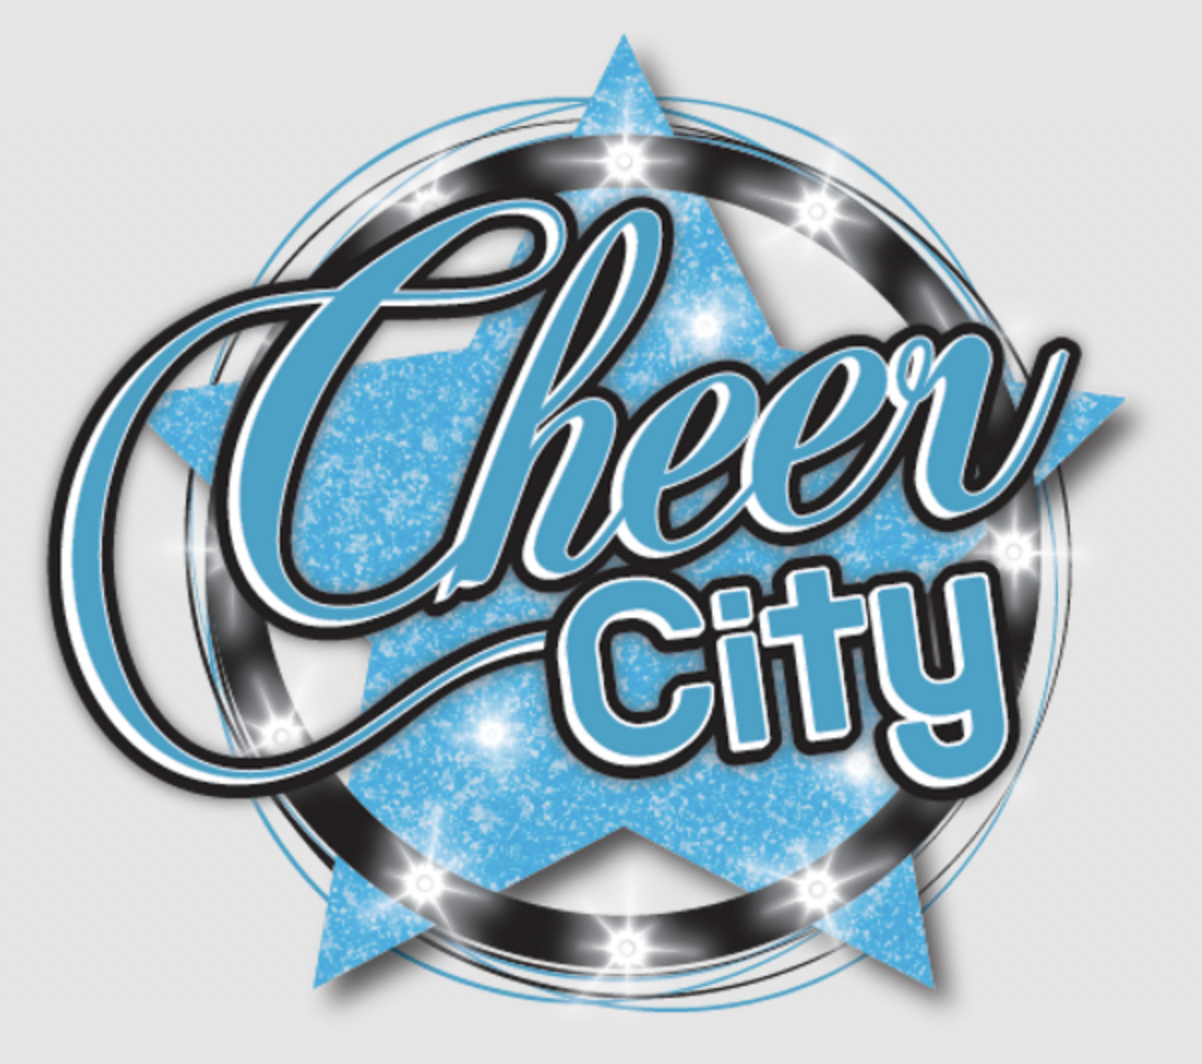 Cheer City